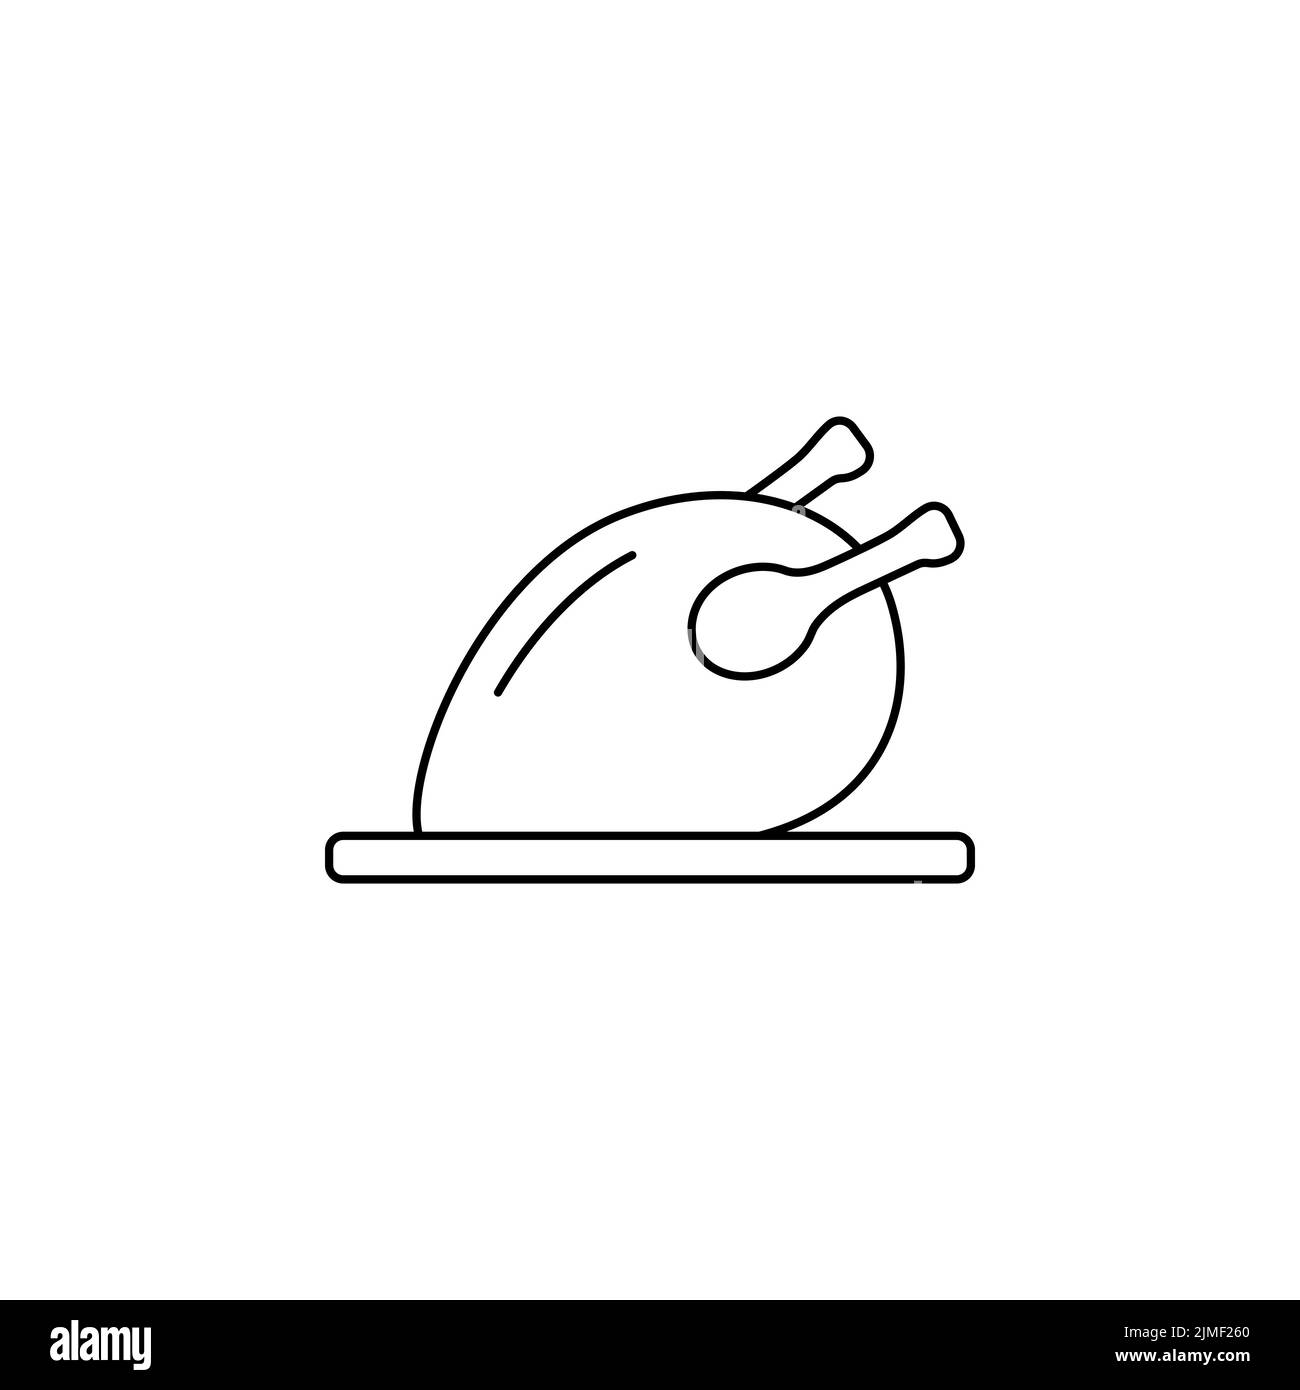 Symbolvektor für Grillhähnchenlinie. Gegrilltes Huhn schwarz umreißt einfaches isoliertes Bild. Logo gegartes Hühnerfleisch. Web Element Fleisch Lebensmittel Stock Vektor